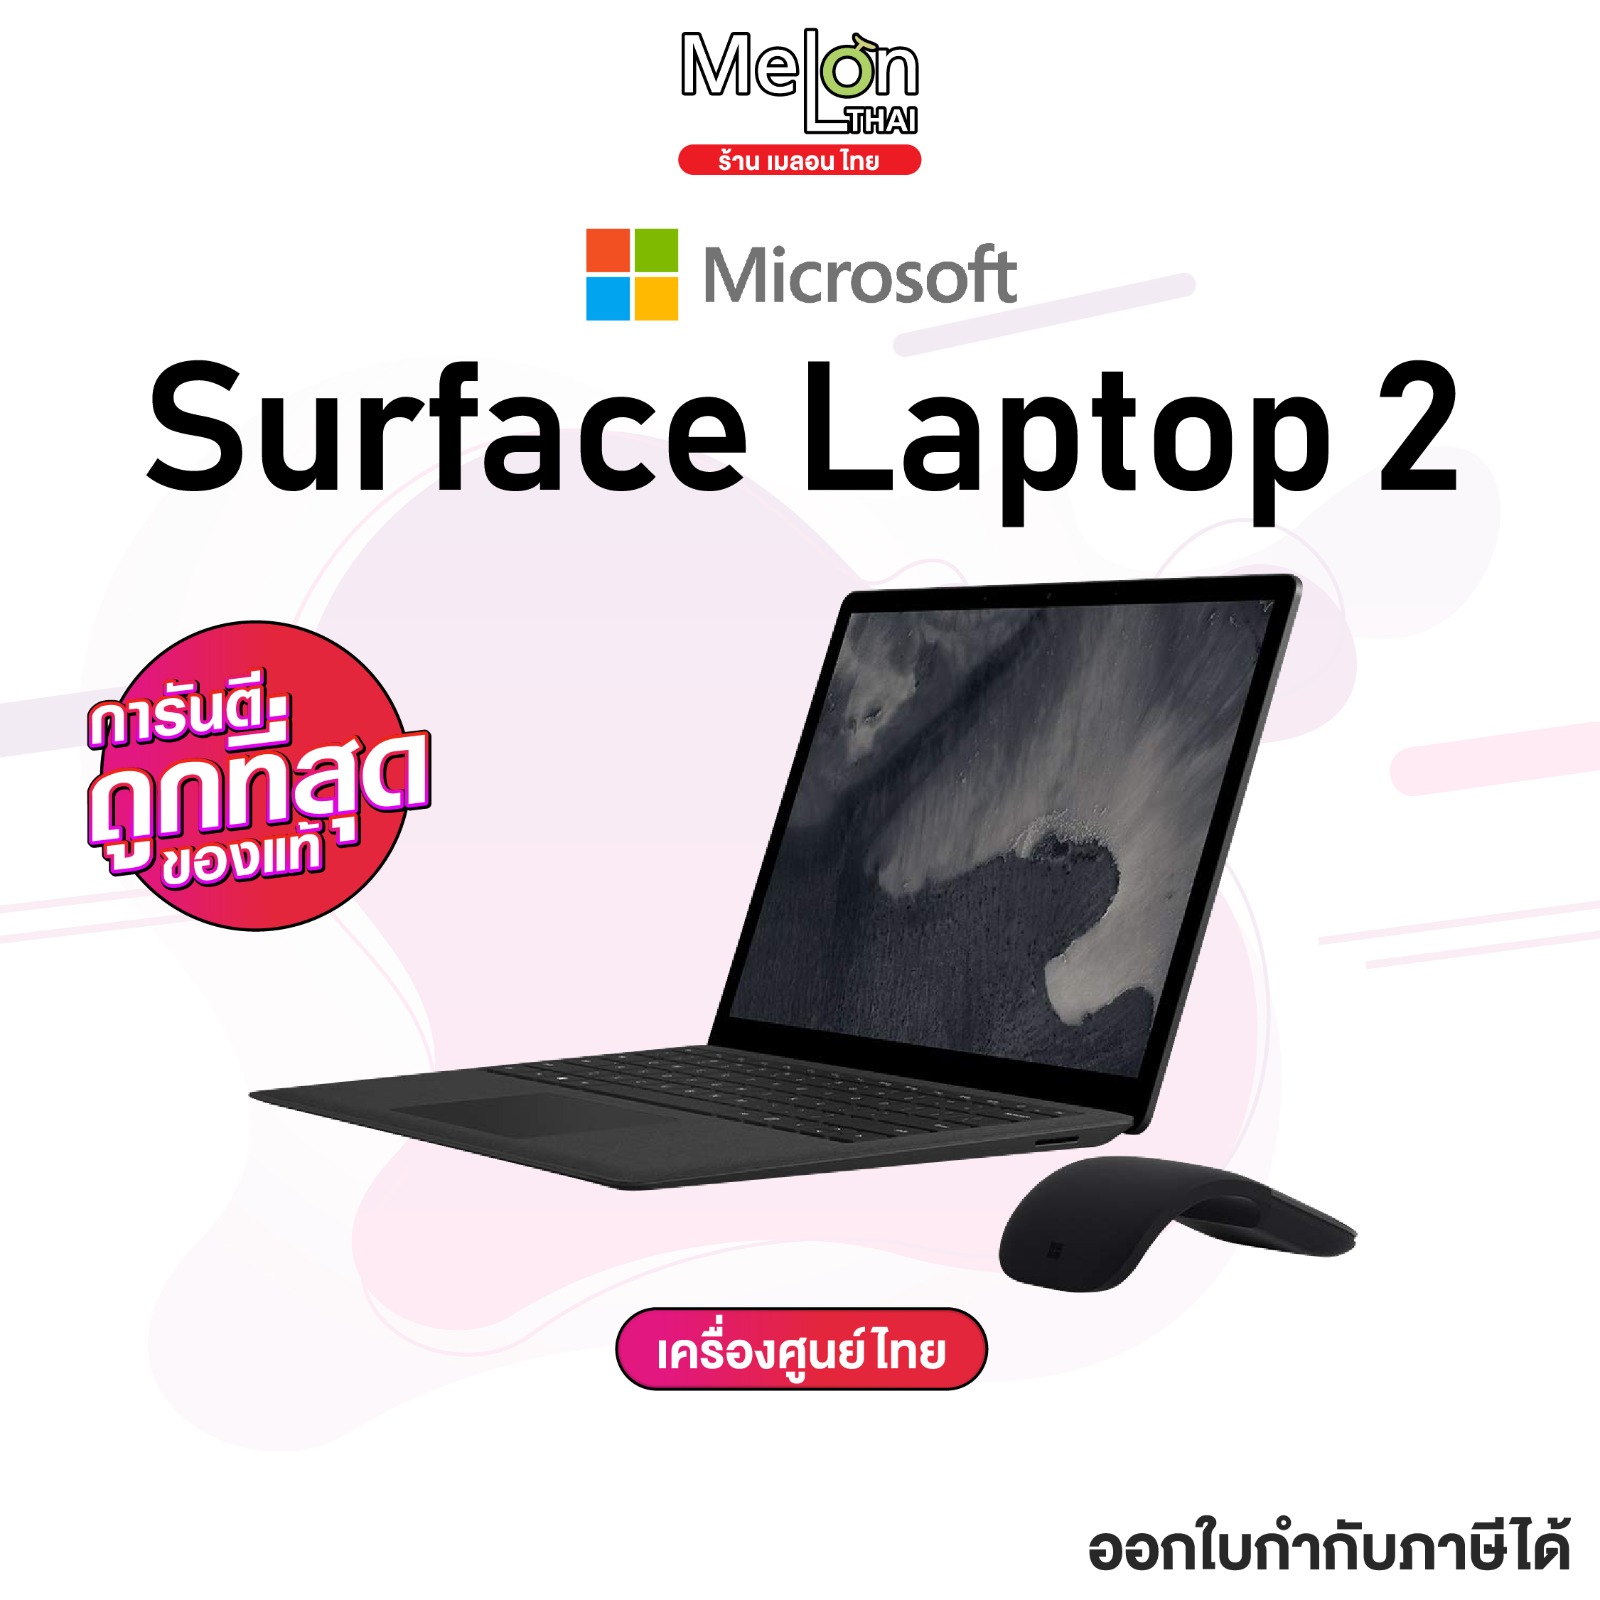 เเล็ปท็อป MicroSoft Surface Laptop2 เครื่องใหม่ ศูนย์ไทย ประกันร้าน 1 ปี ออกใบกำกับภาษีได้ Window10 pro i5 น้ำหนักเบา สี Silver